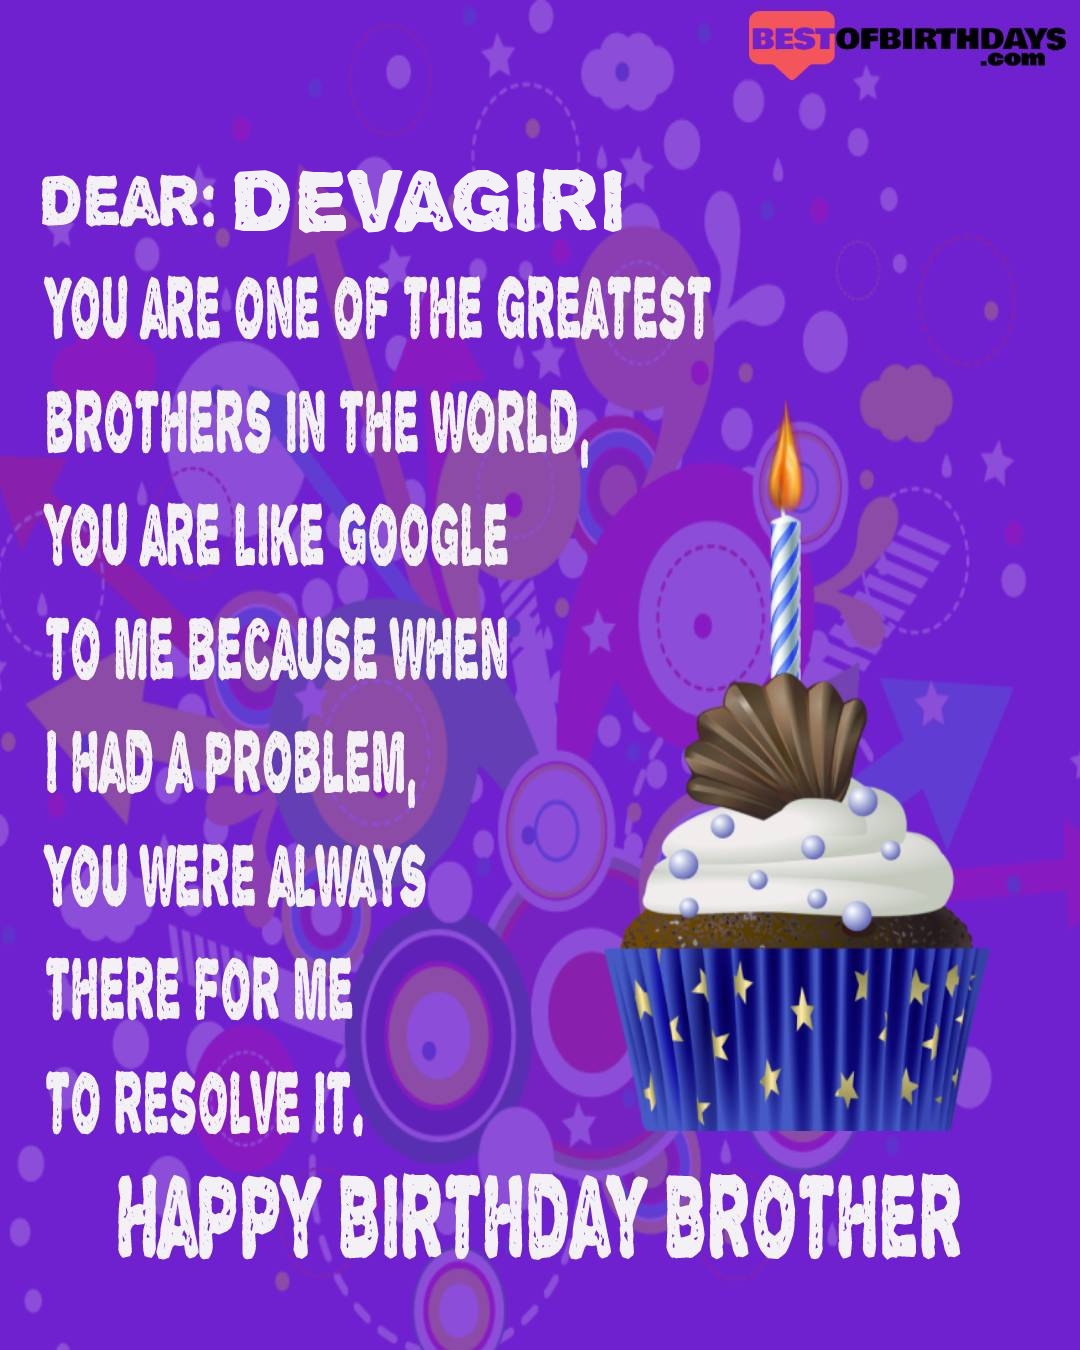 Happy birthday devagiri bhai brother bro